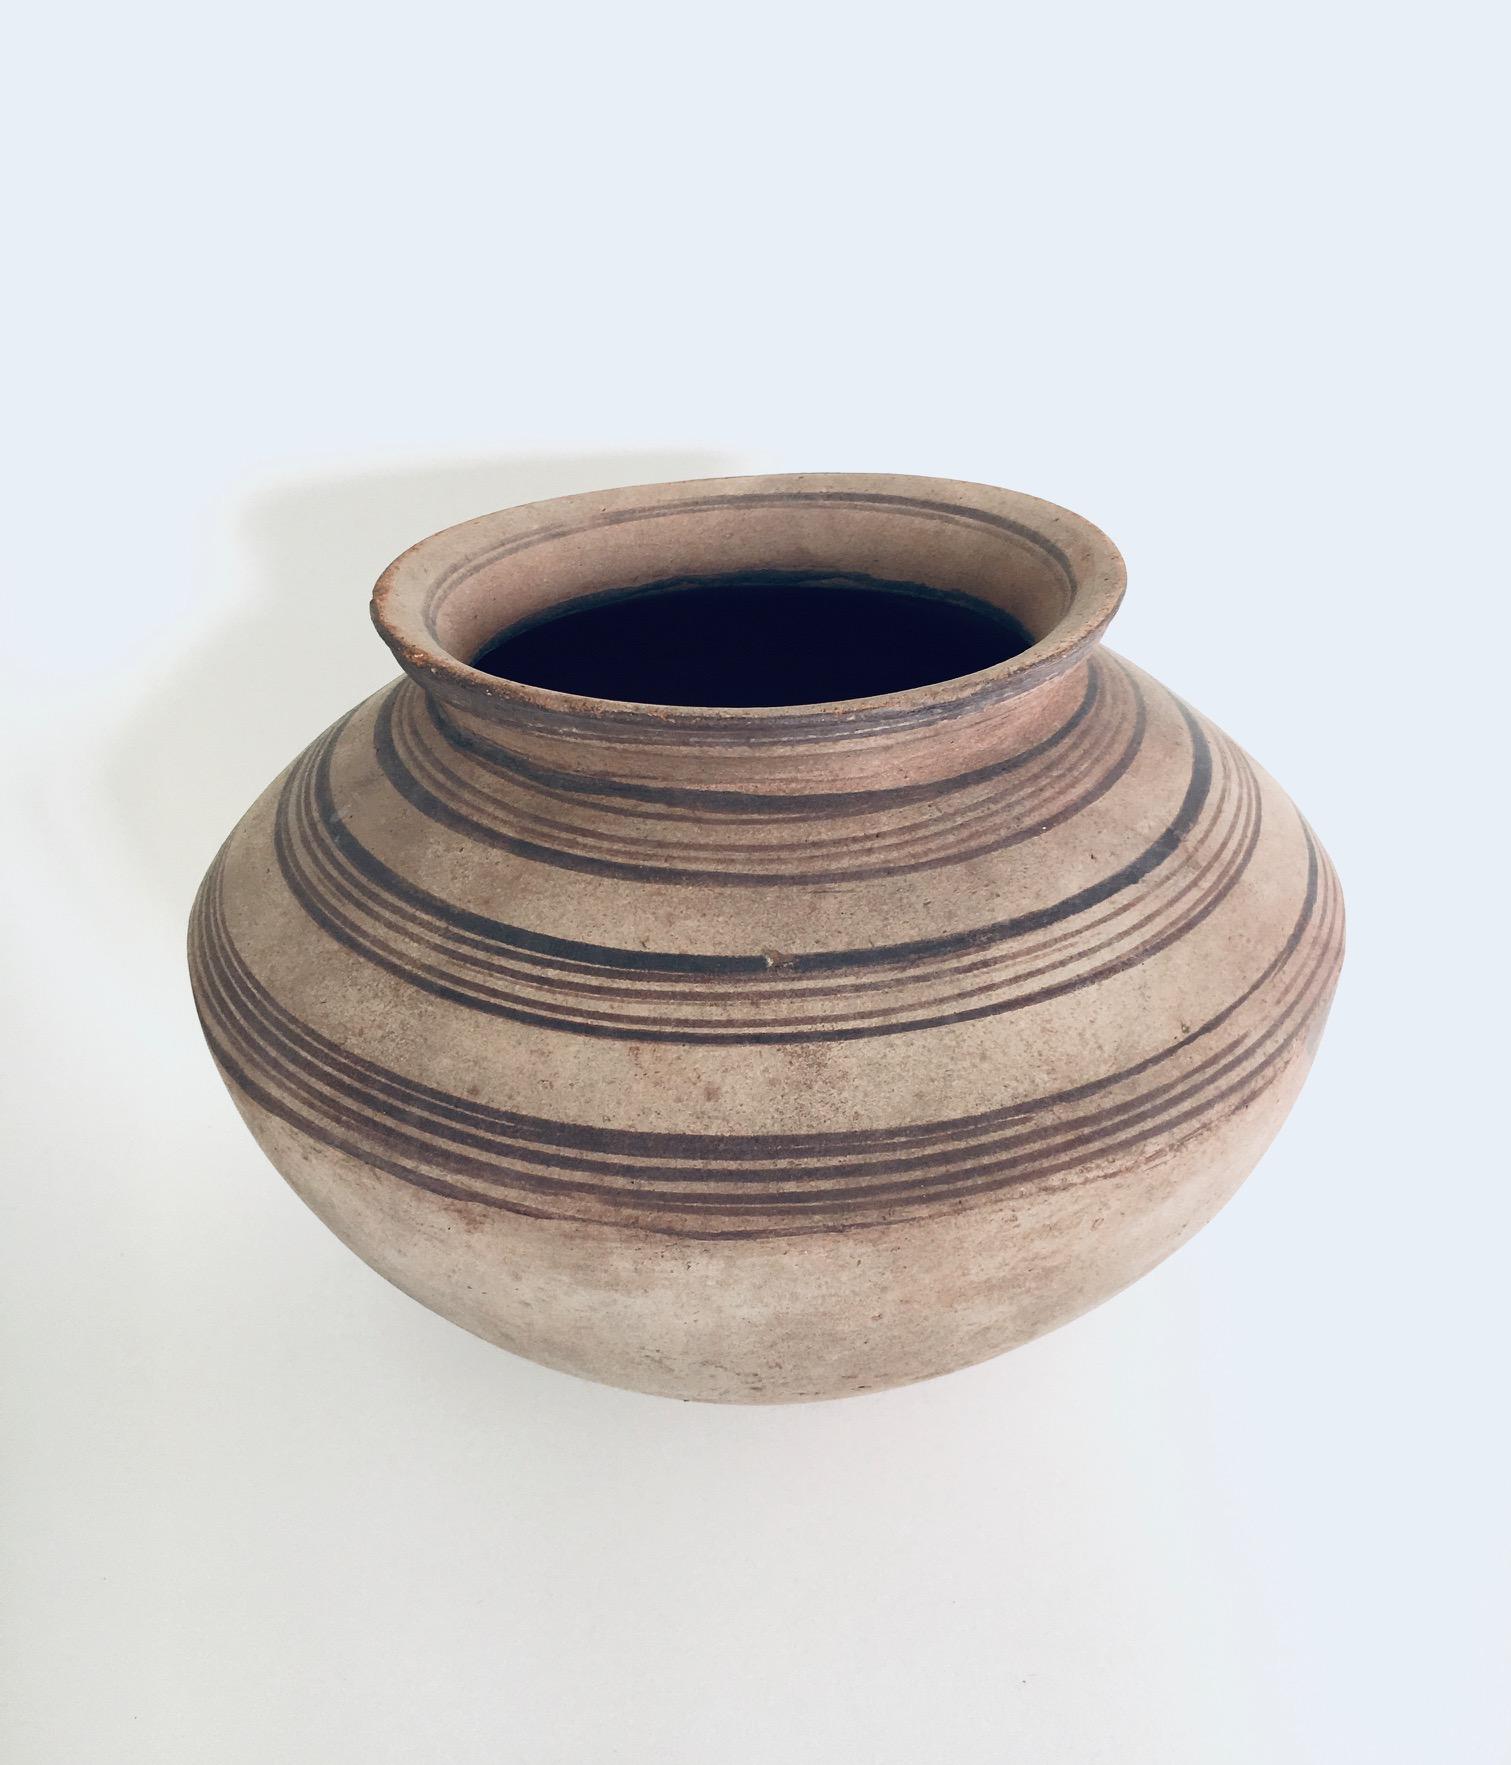 Original Handcrafted Pottery Earthenware XL Container Topf, Made in Ungarn Anfang 1900's. Handgefertigtes Gefäß aus rotem Ton mit matter Glasur, das zur Aufbewahrung von Lebensmitteln diente und teilweise im Boden vergraben war. Schöne verblasste